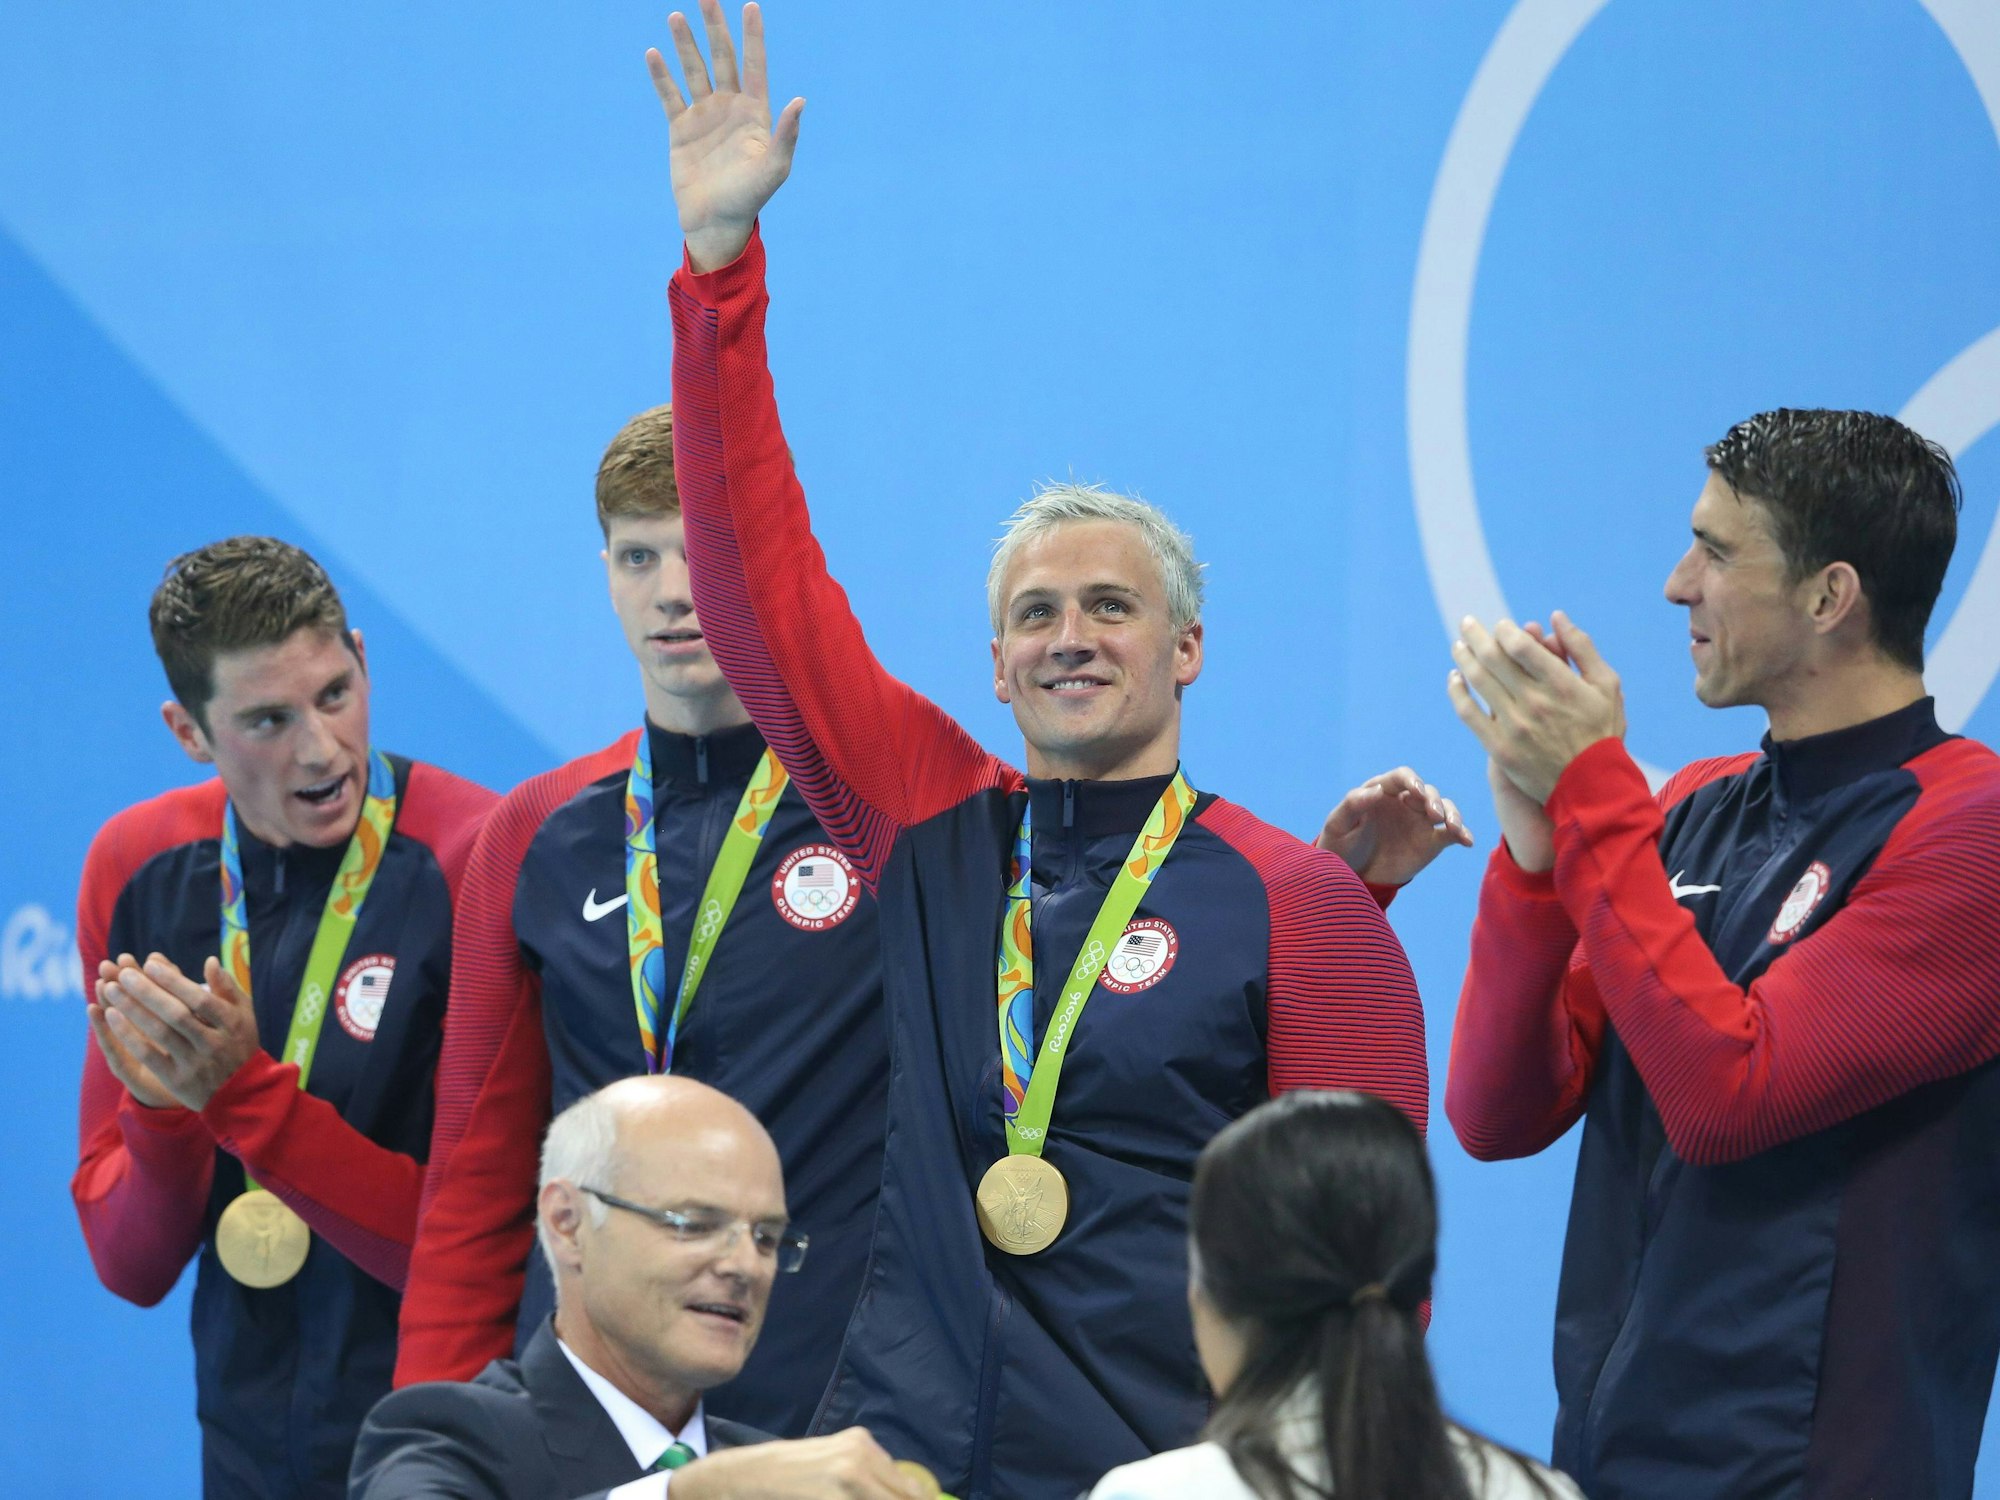 Das US-Schwimmteam feiert seine Goldmedaille